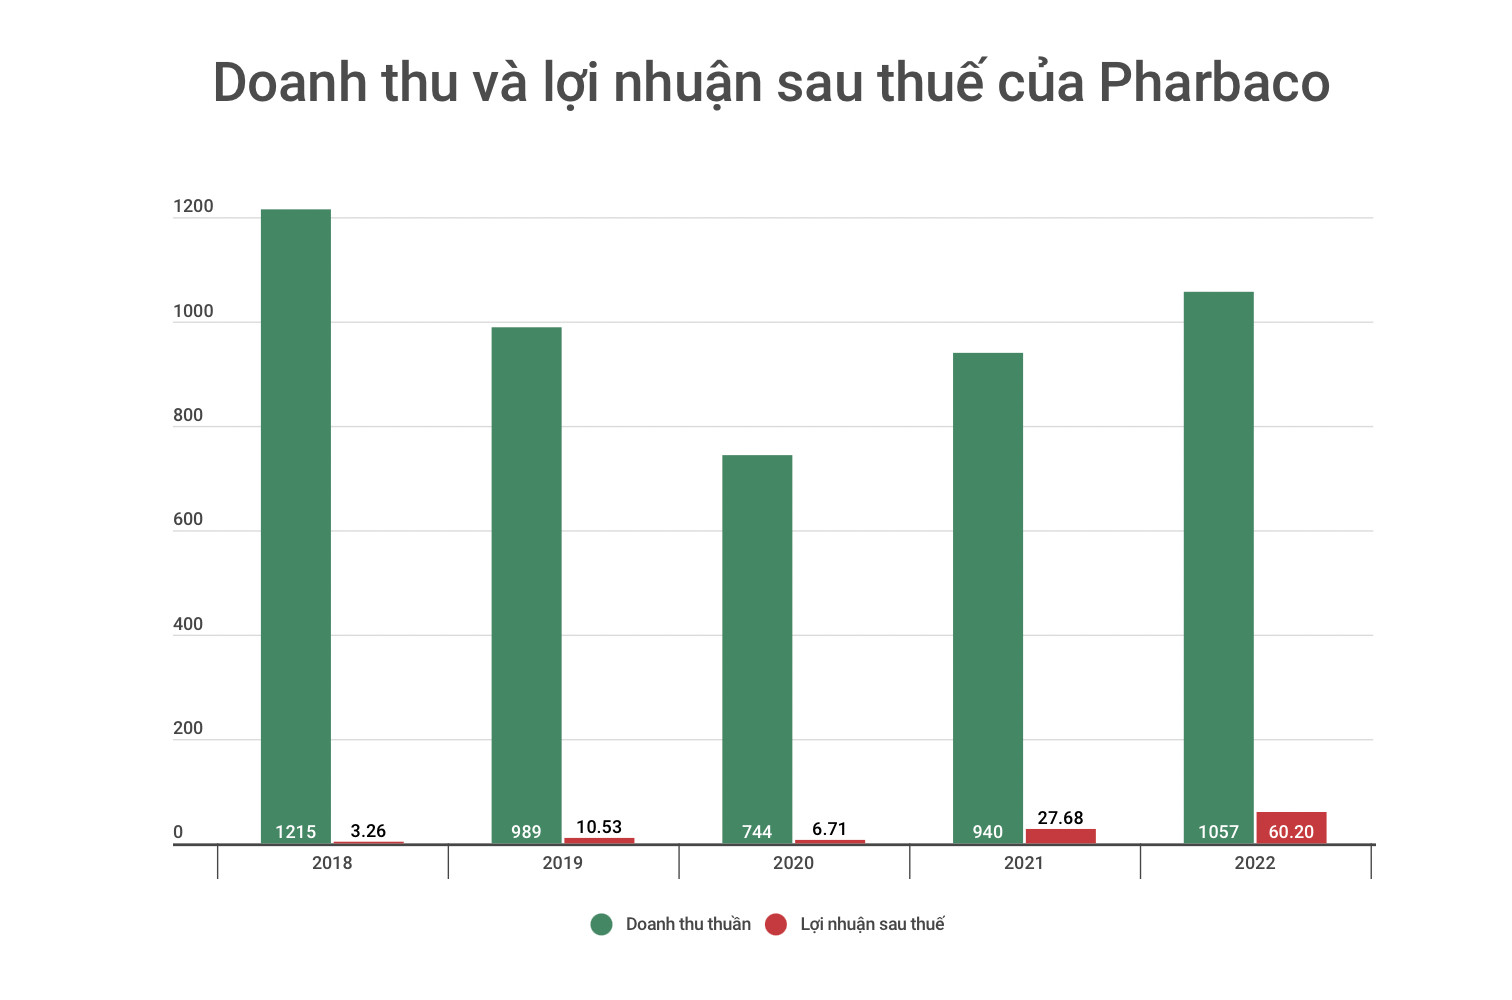 Doanh thu và lợi nhuận Pharbaco tăng trưởng trong giai đoạn 2020 - 2022. Ảnh: Chụp màn hình.